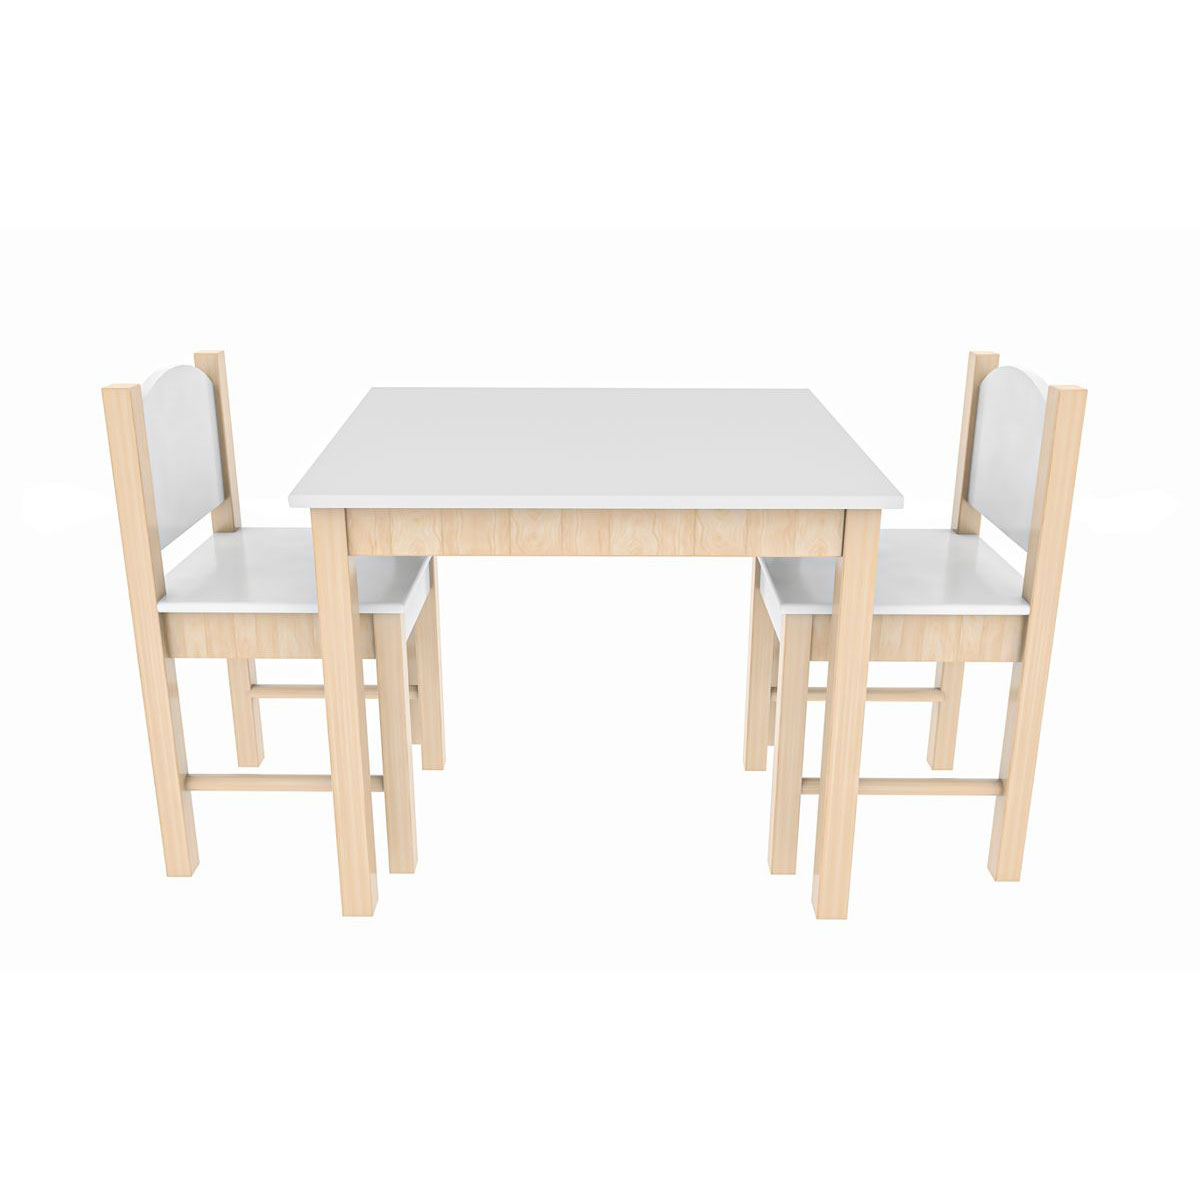 Coemo 3tlg. Kindersitzgruppe 1 Weiß Stefano | | 2 K003207151 weiß Tisch Stühle